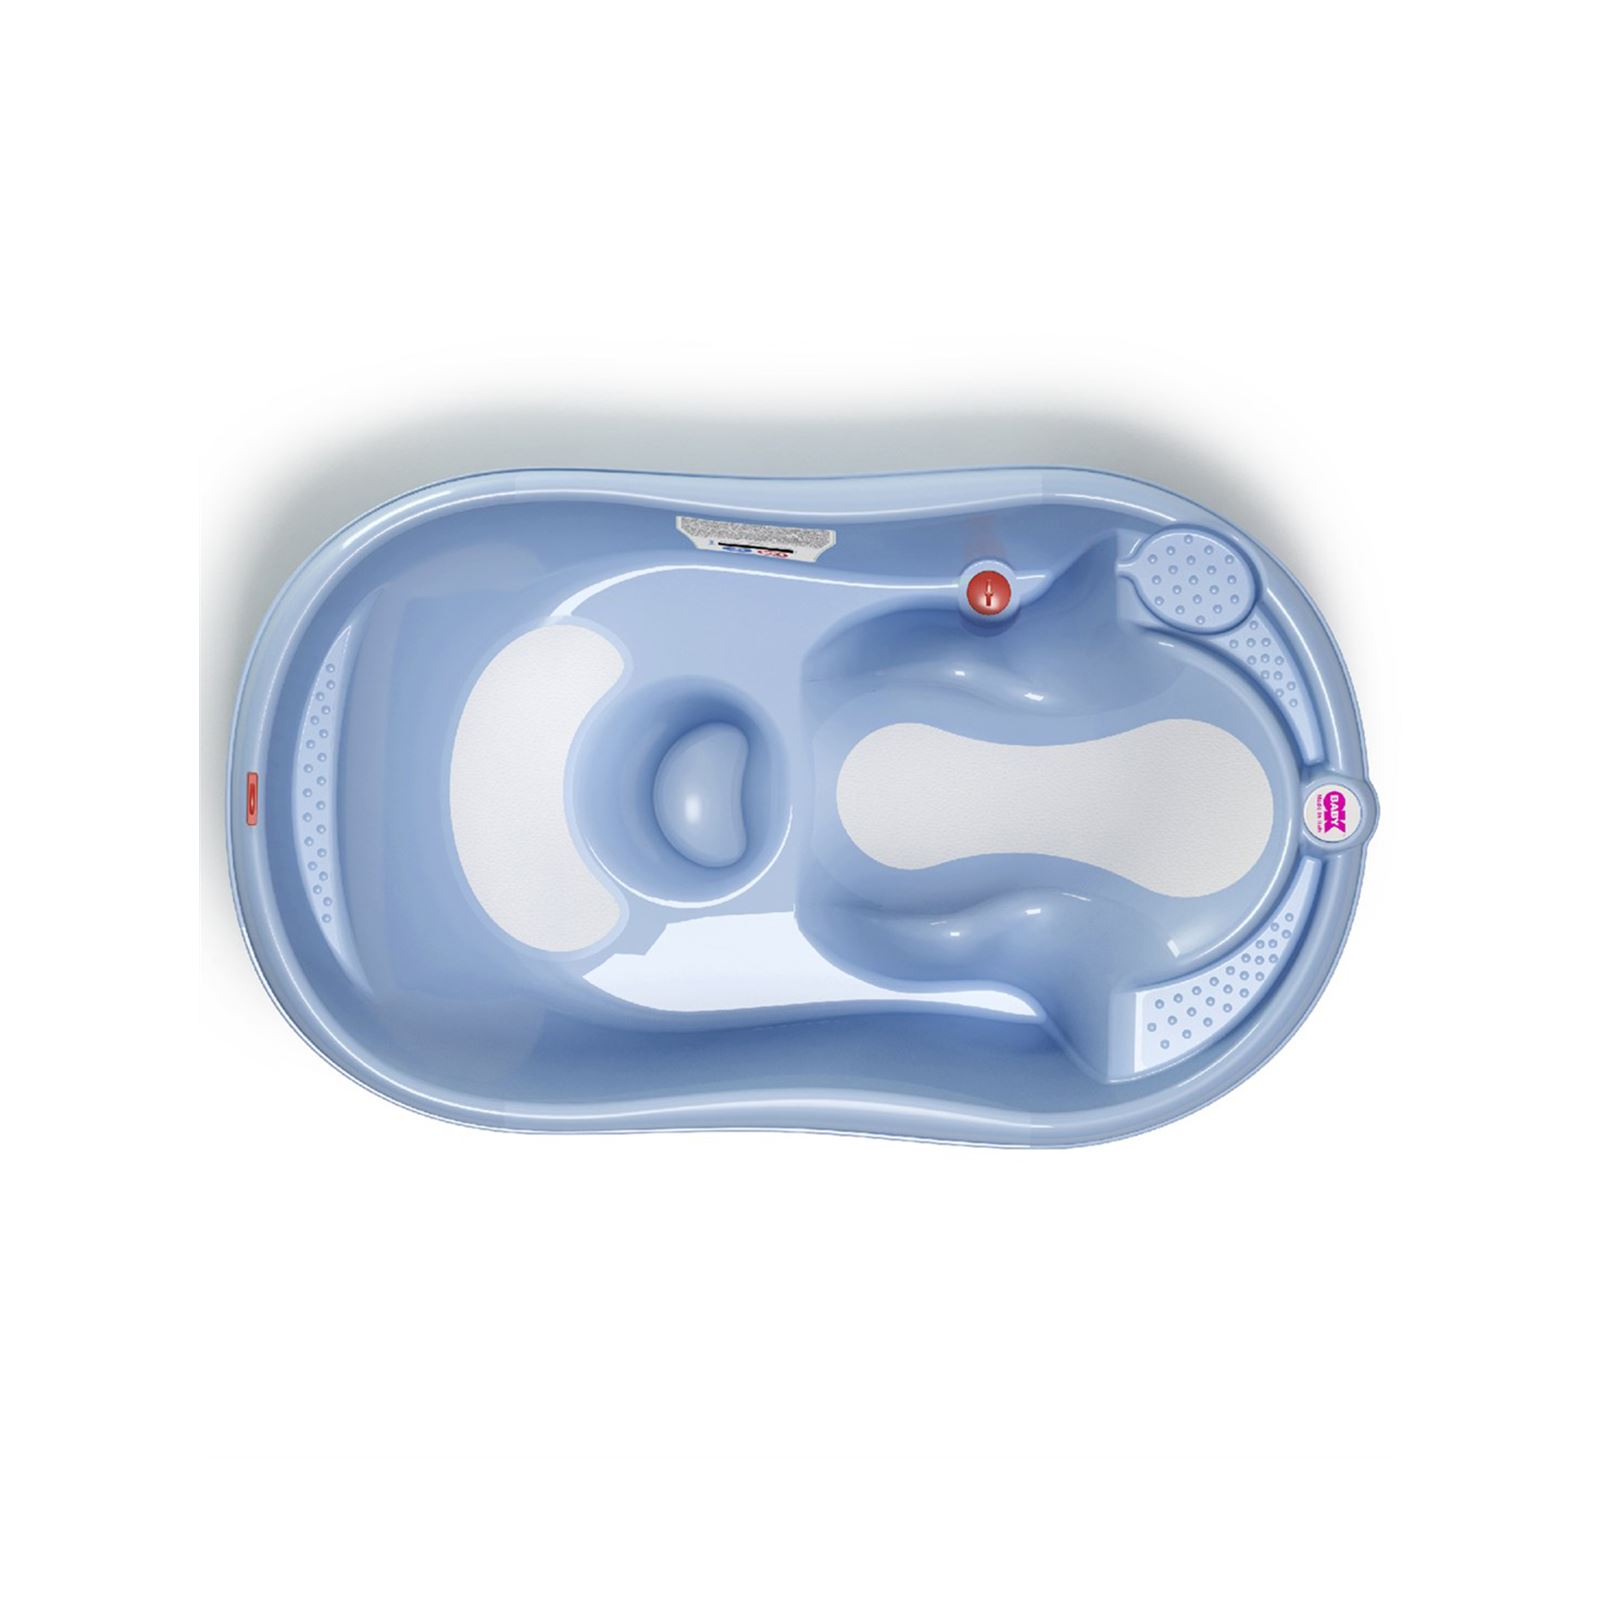 OkBaby Onda Evol Banyo Küveti & Küvet Taşıyıcı / Mavi